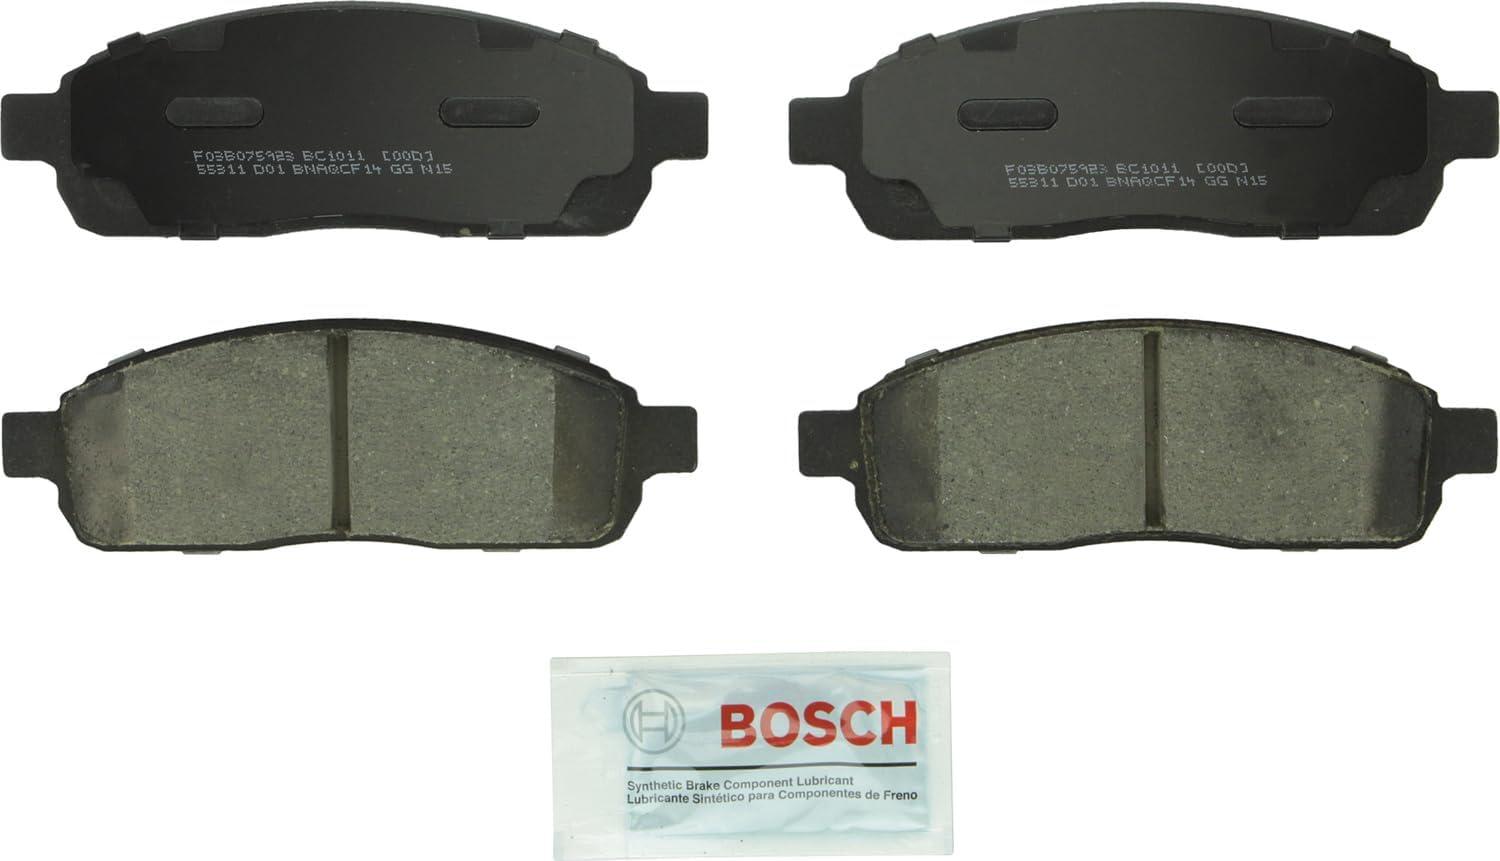 Bosch QuietCast Premium Ceramic Disc Brake Pad Set for $20.68